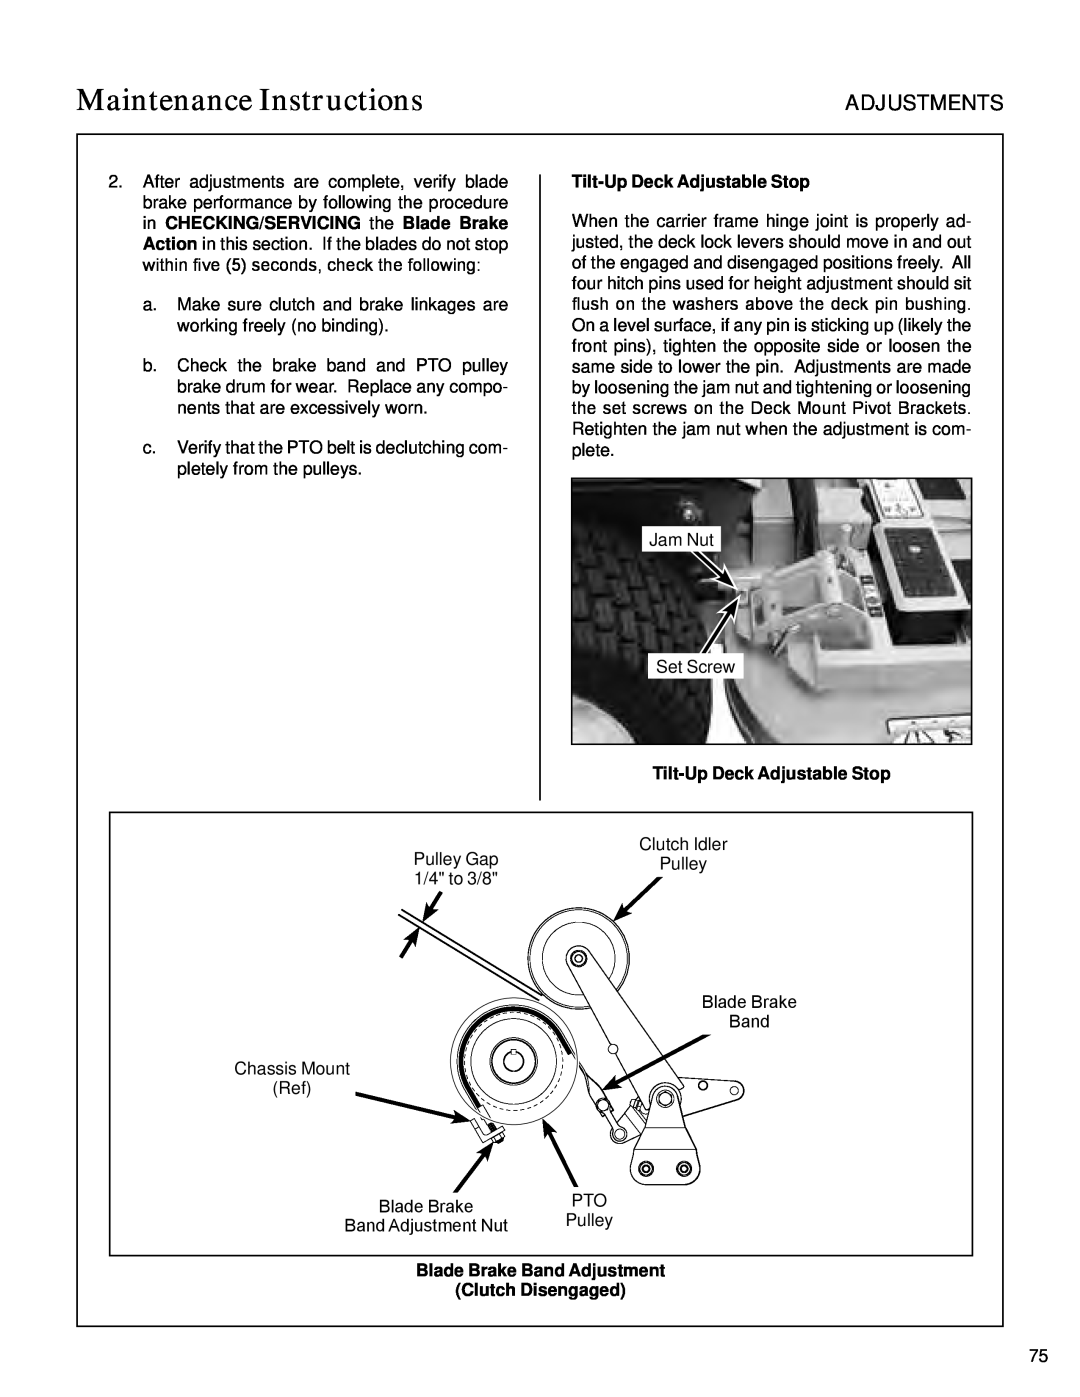 Walker S14 manual Tilt-UpDeck Adjustable Stop, Blade Brake Band Adjustment Clutch Disengaged, Maintenance Instructions 